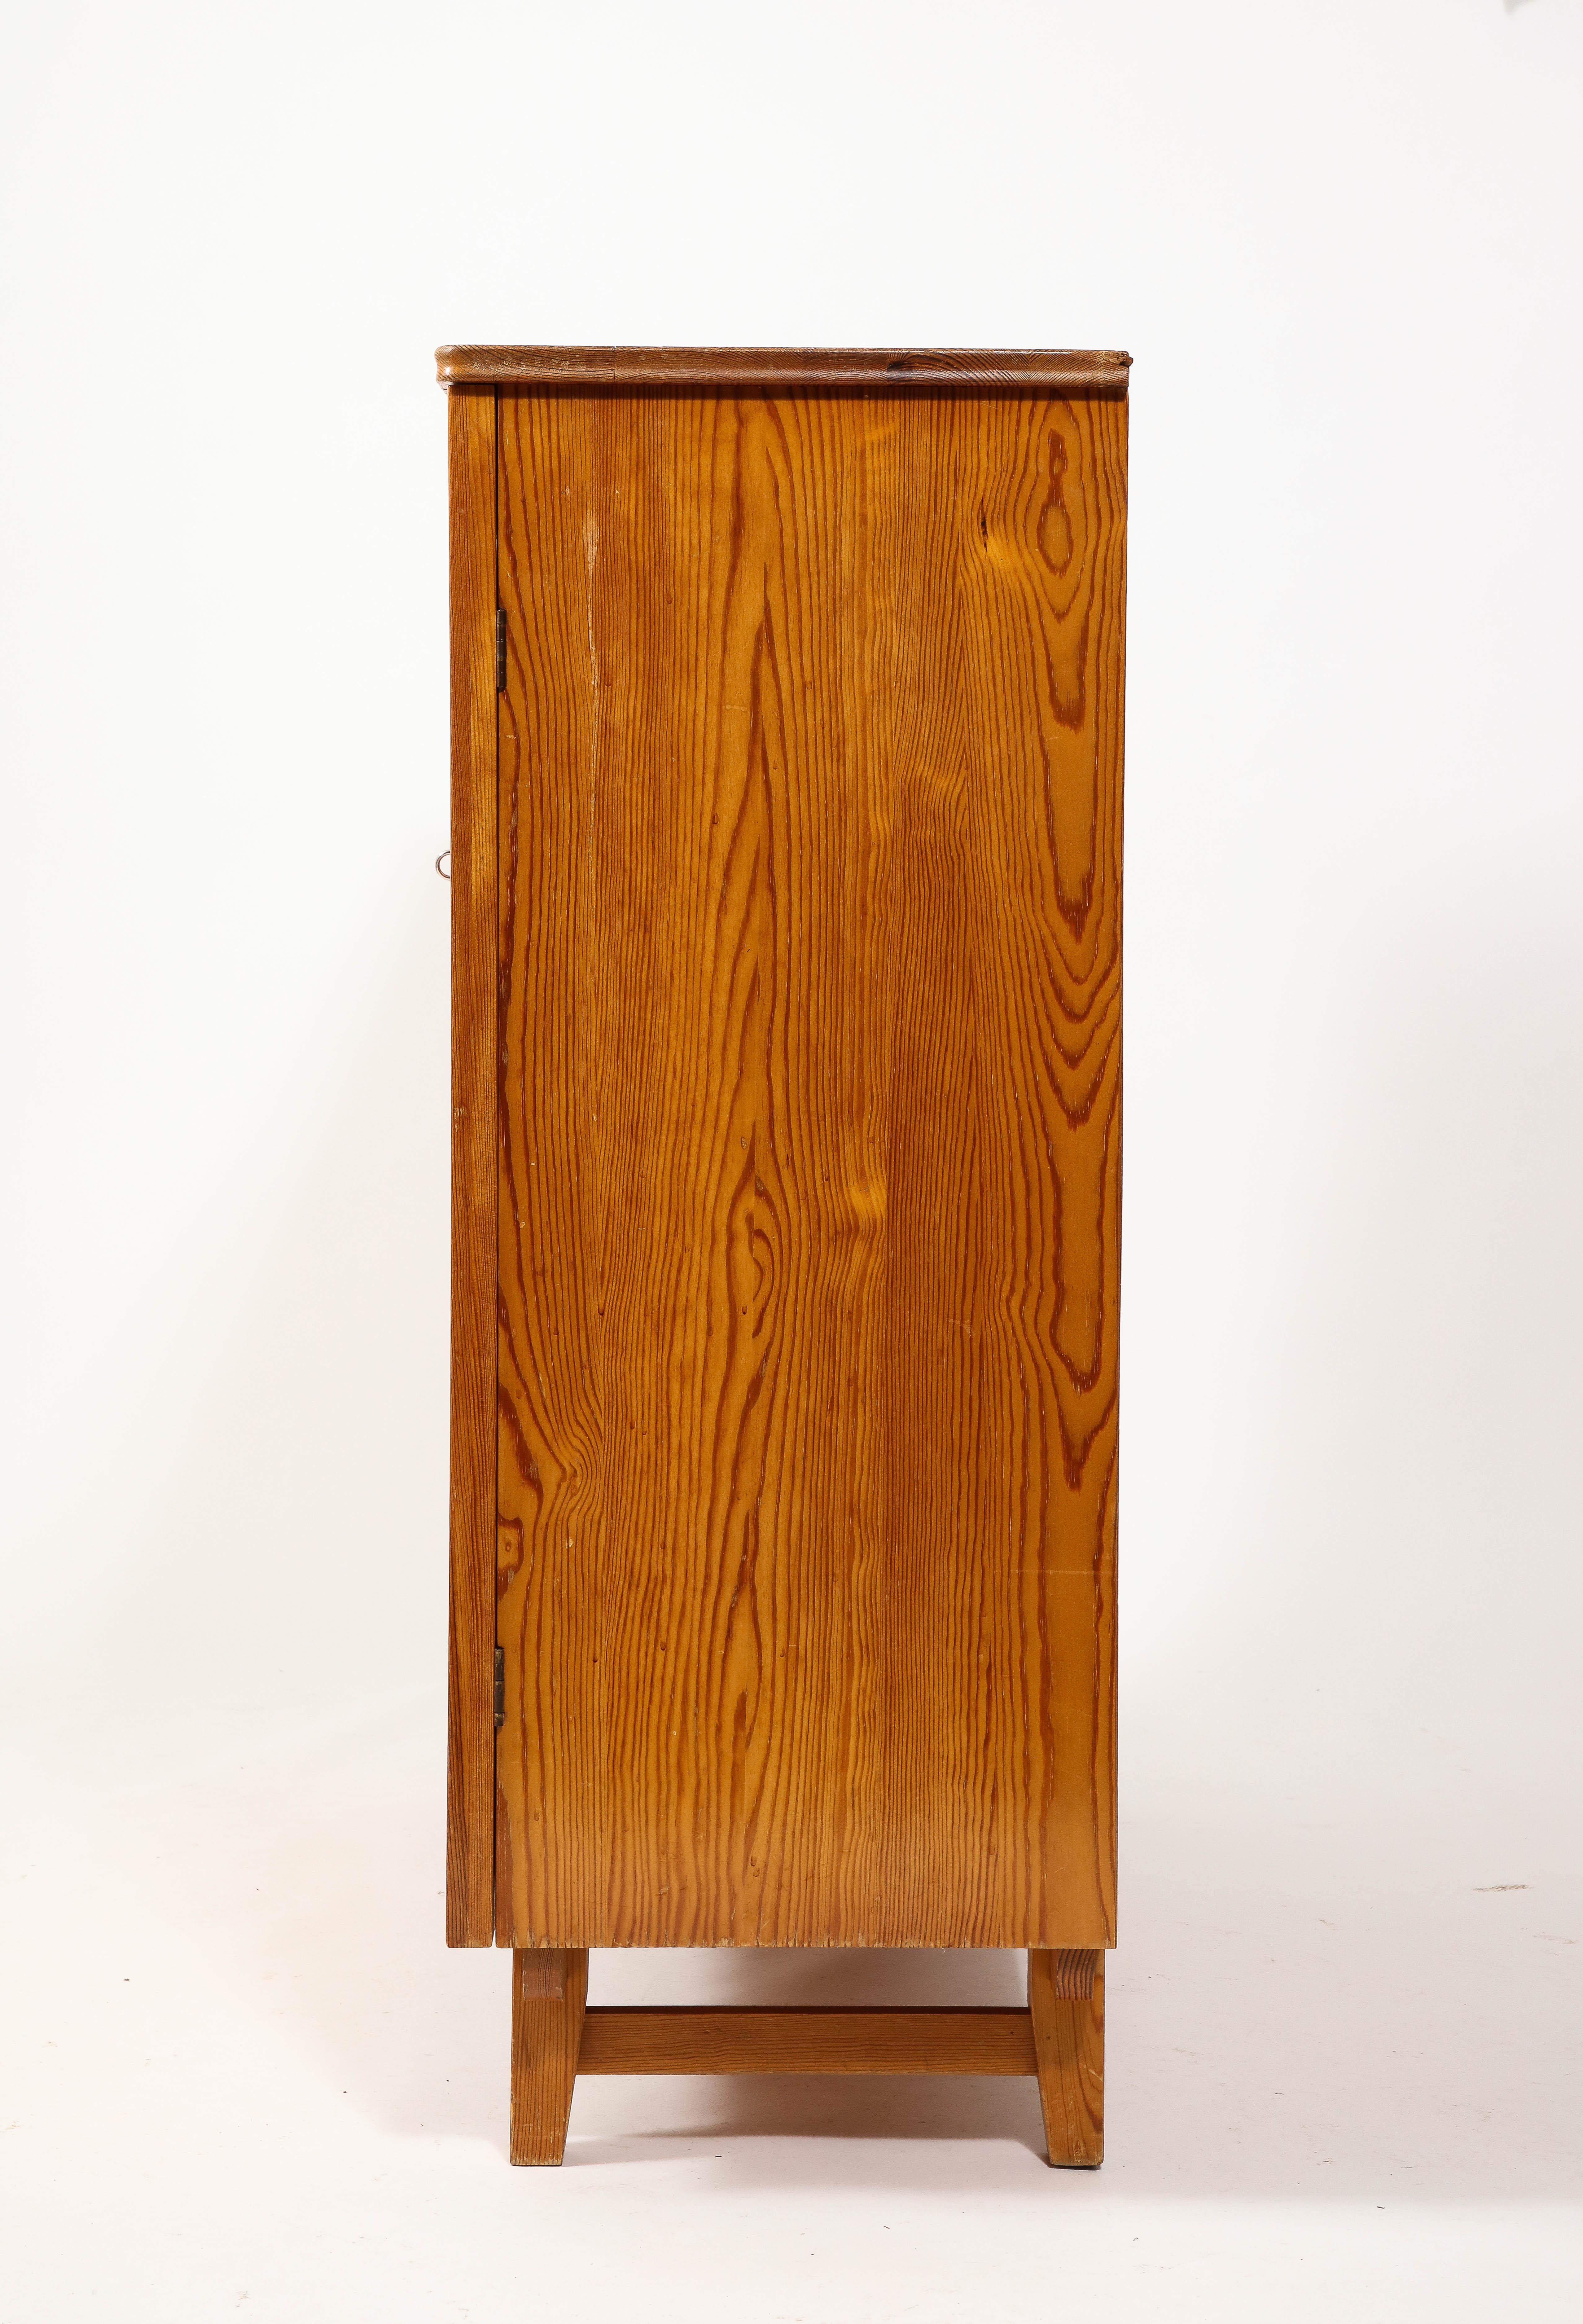 Göran Malmvall Svensk Stamped Modernist Rustic Pine Cabinet, Sweden 1950's For Sale 6